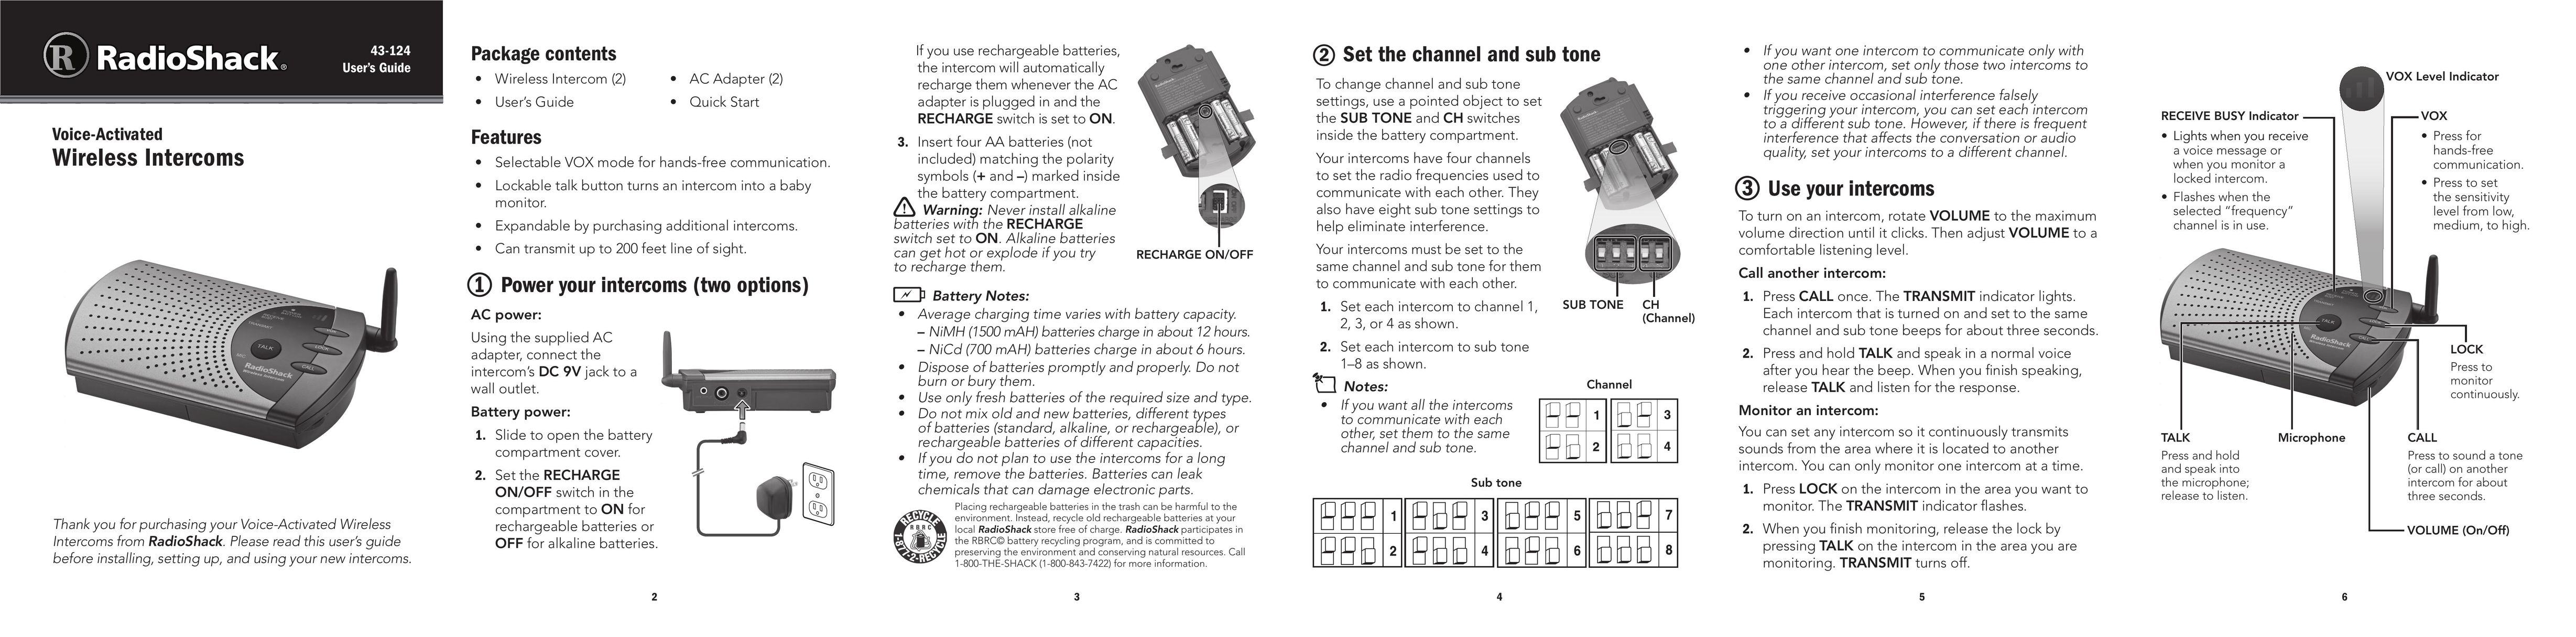 Radio Shack 43-124 Intercom System User Manual